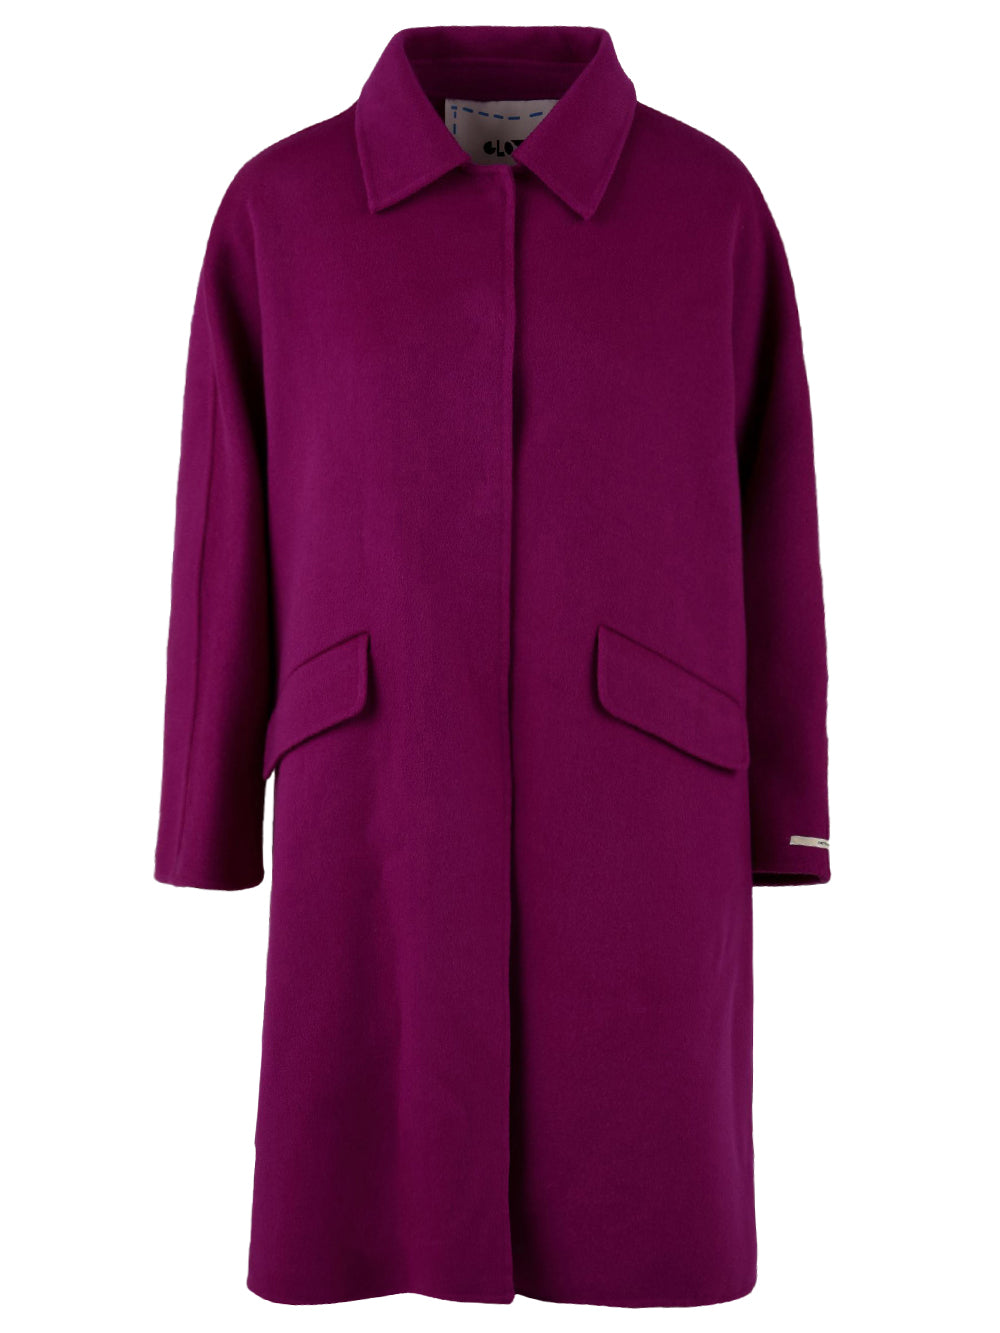 Cappotto lungo Donna in lana viola, Glox